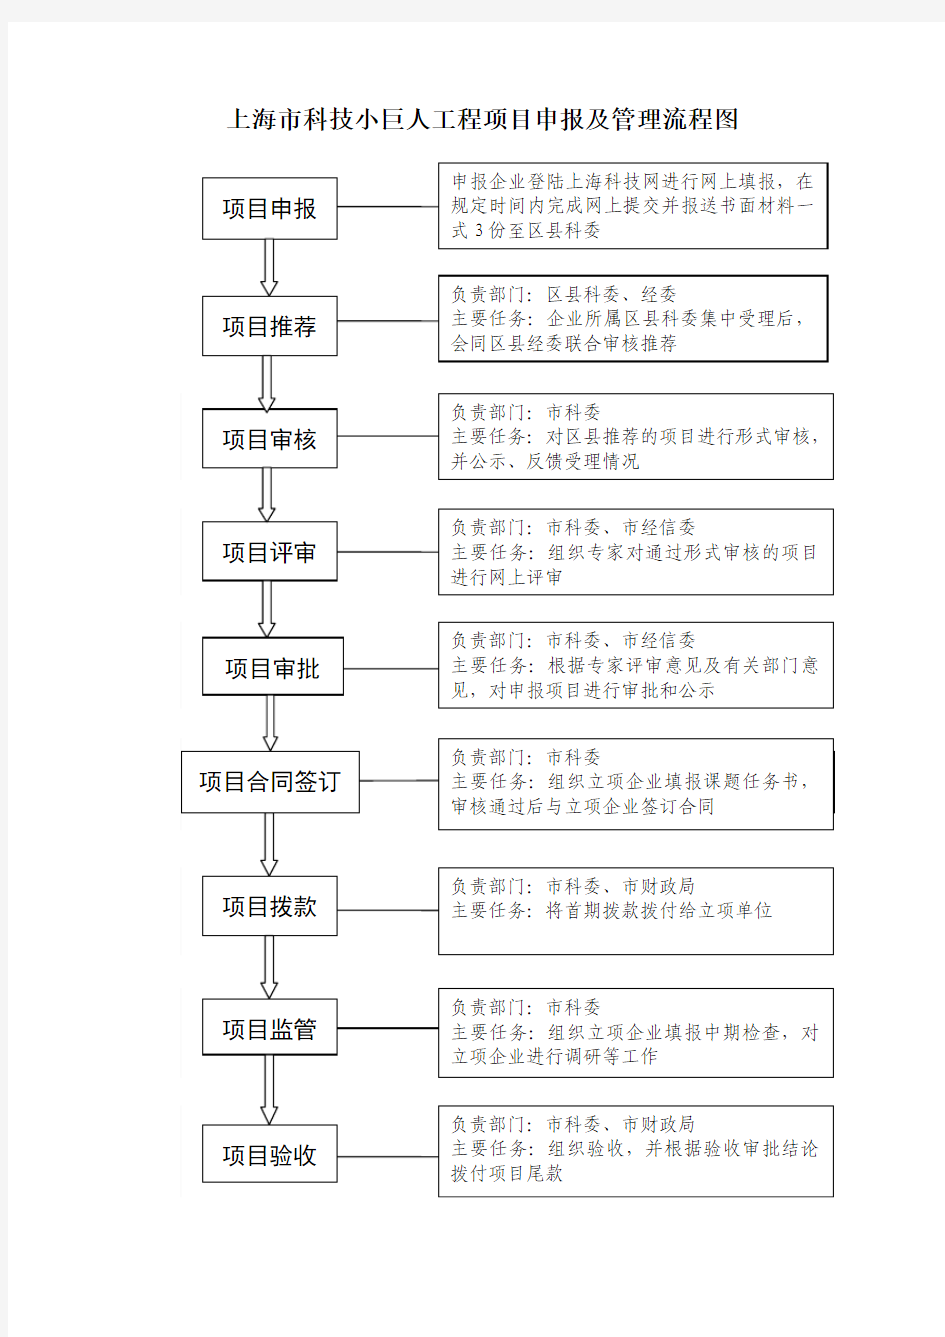 上海市科技小巨人工程项目申报及管理流程图